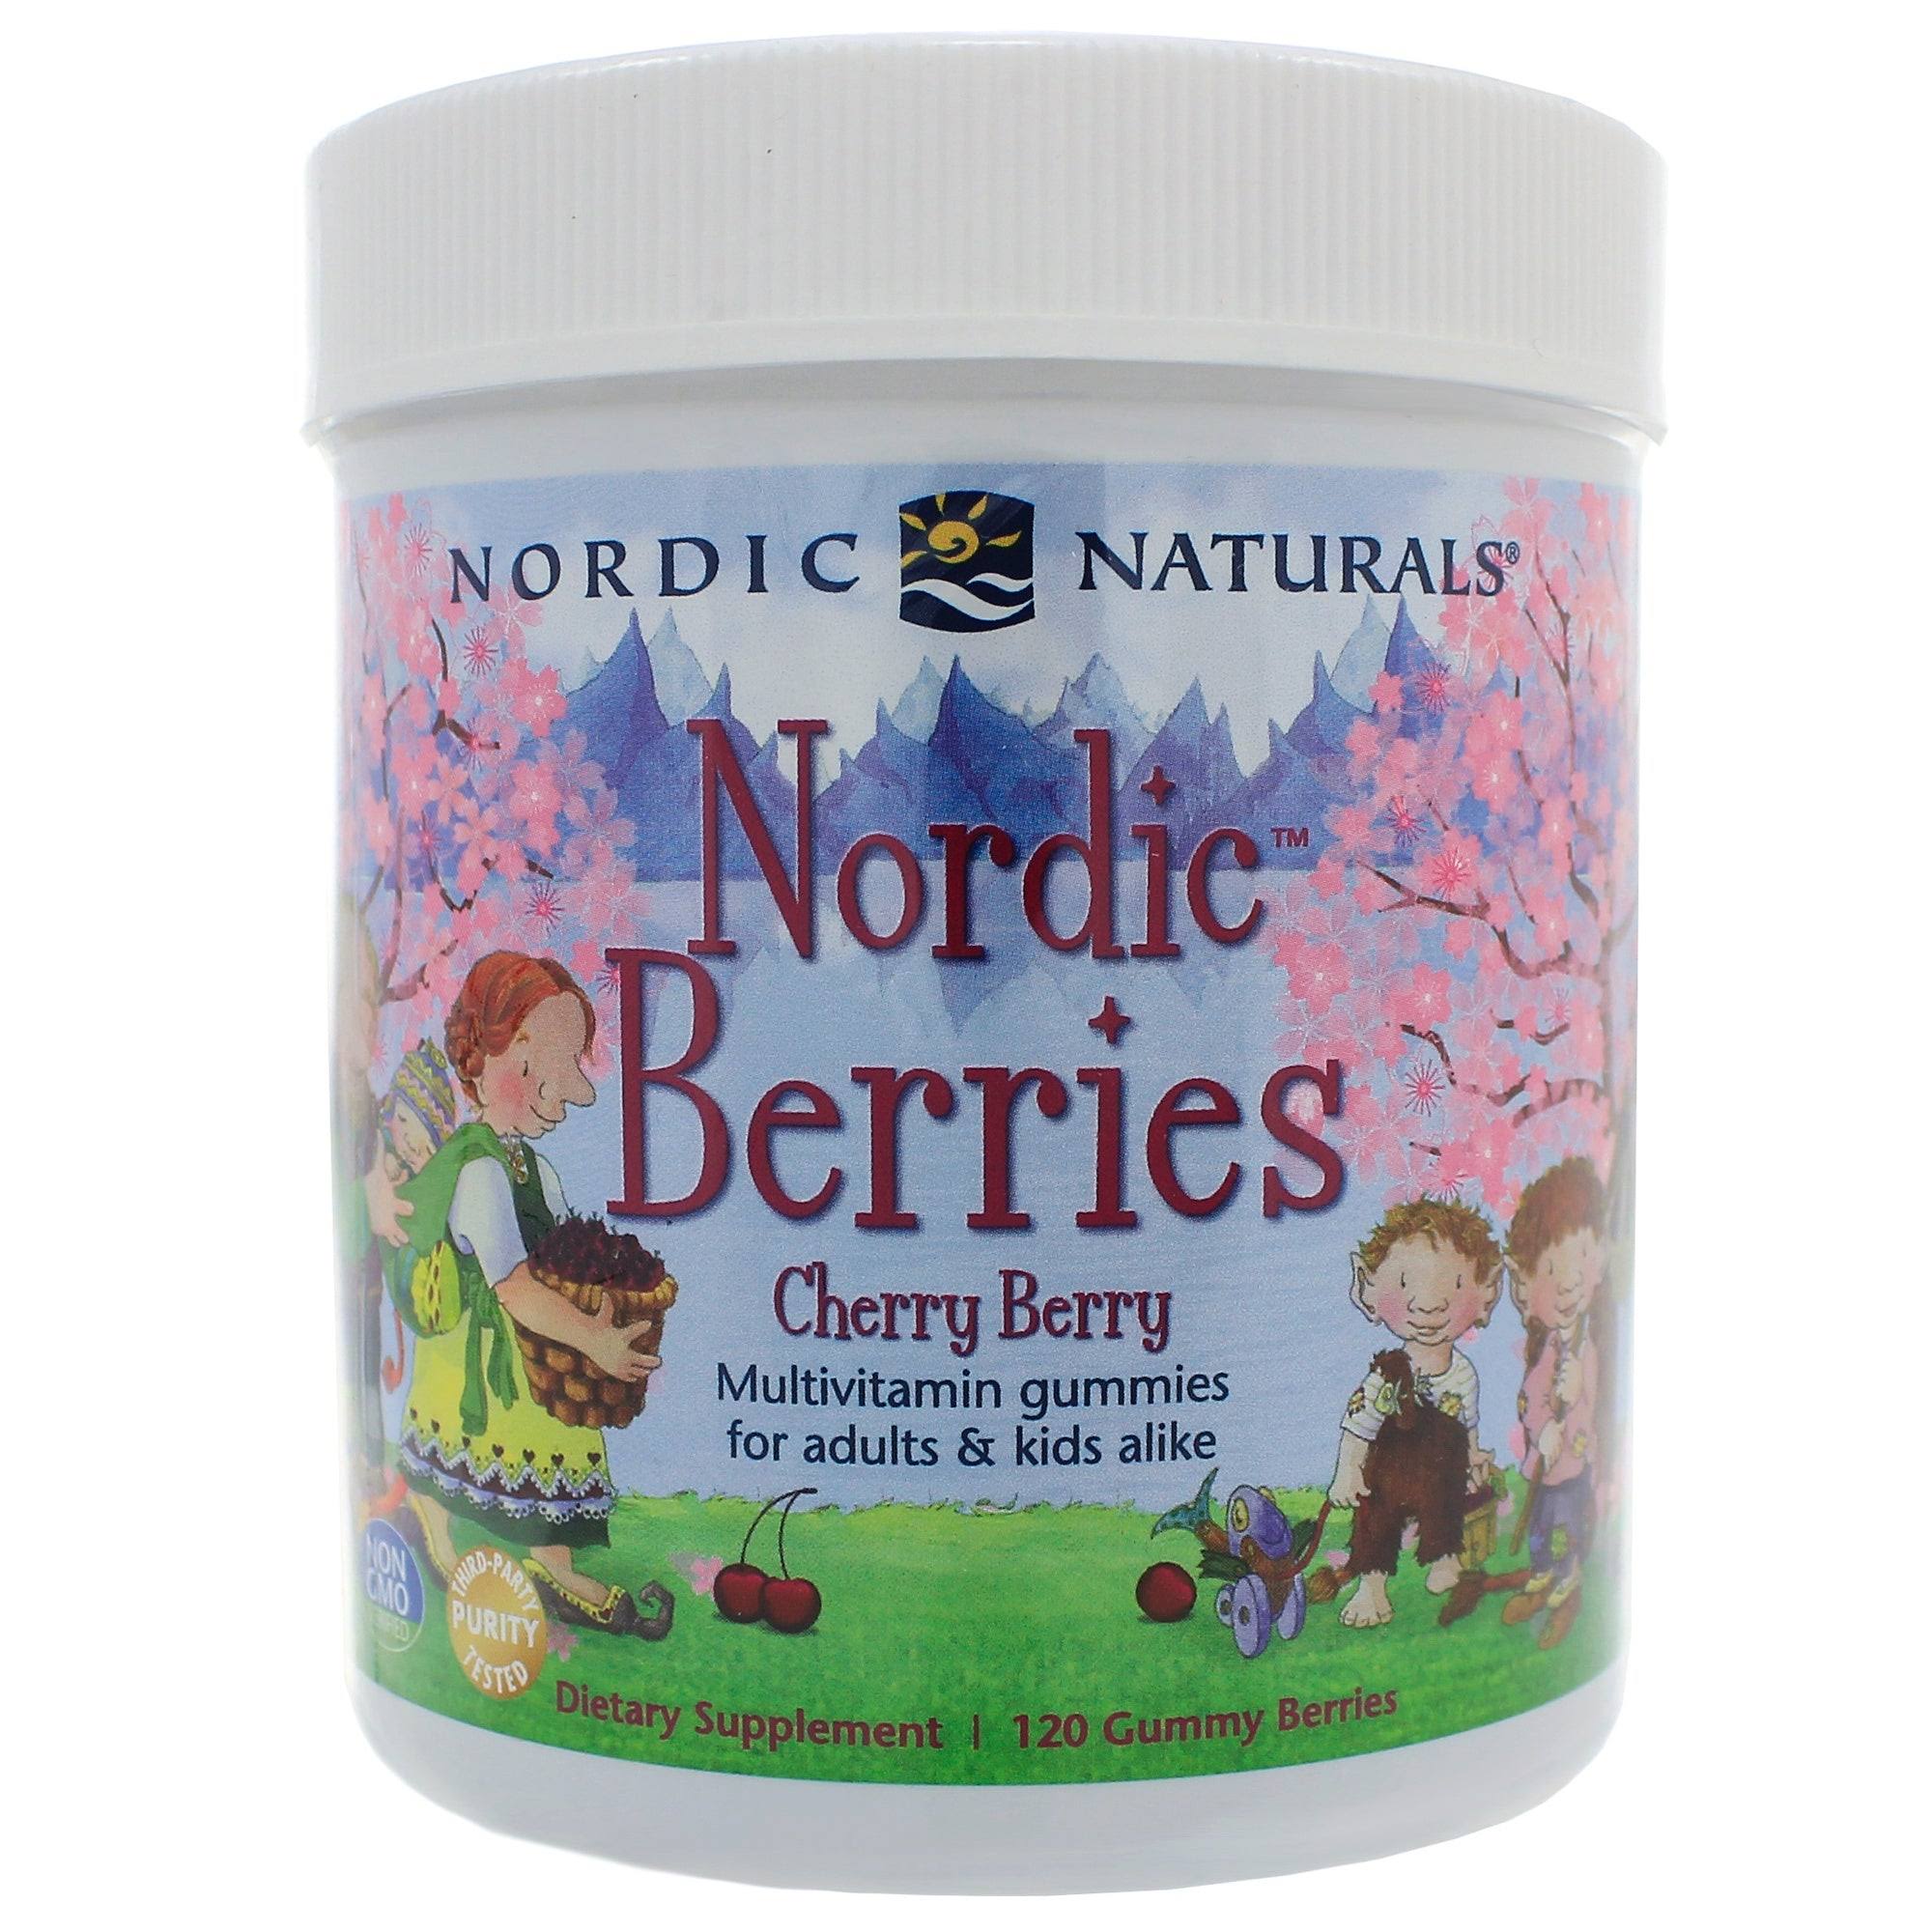 Nordic Naturals Gummy Berries - Cherry Berry, 120ct